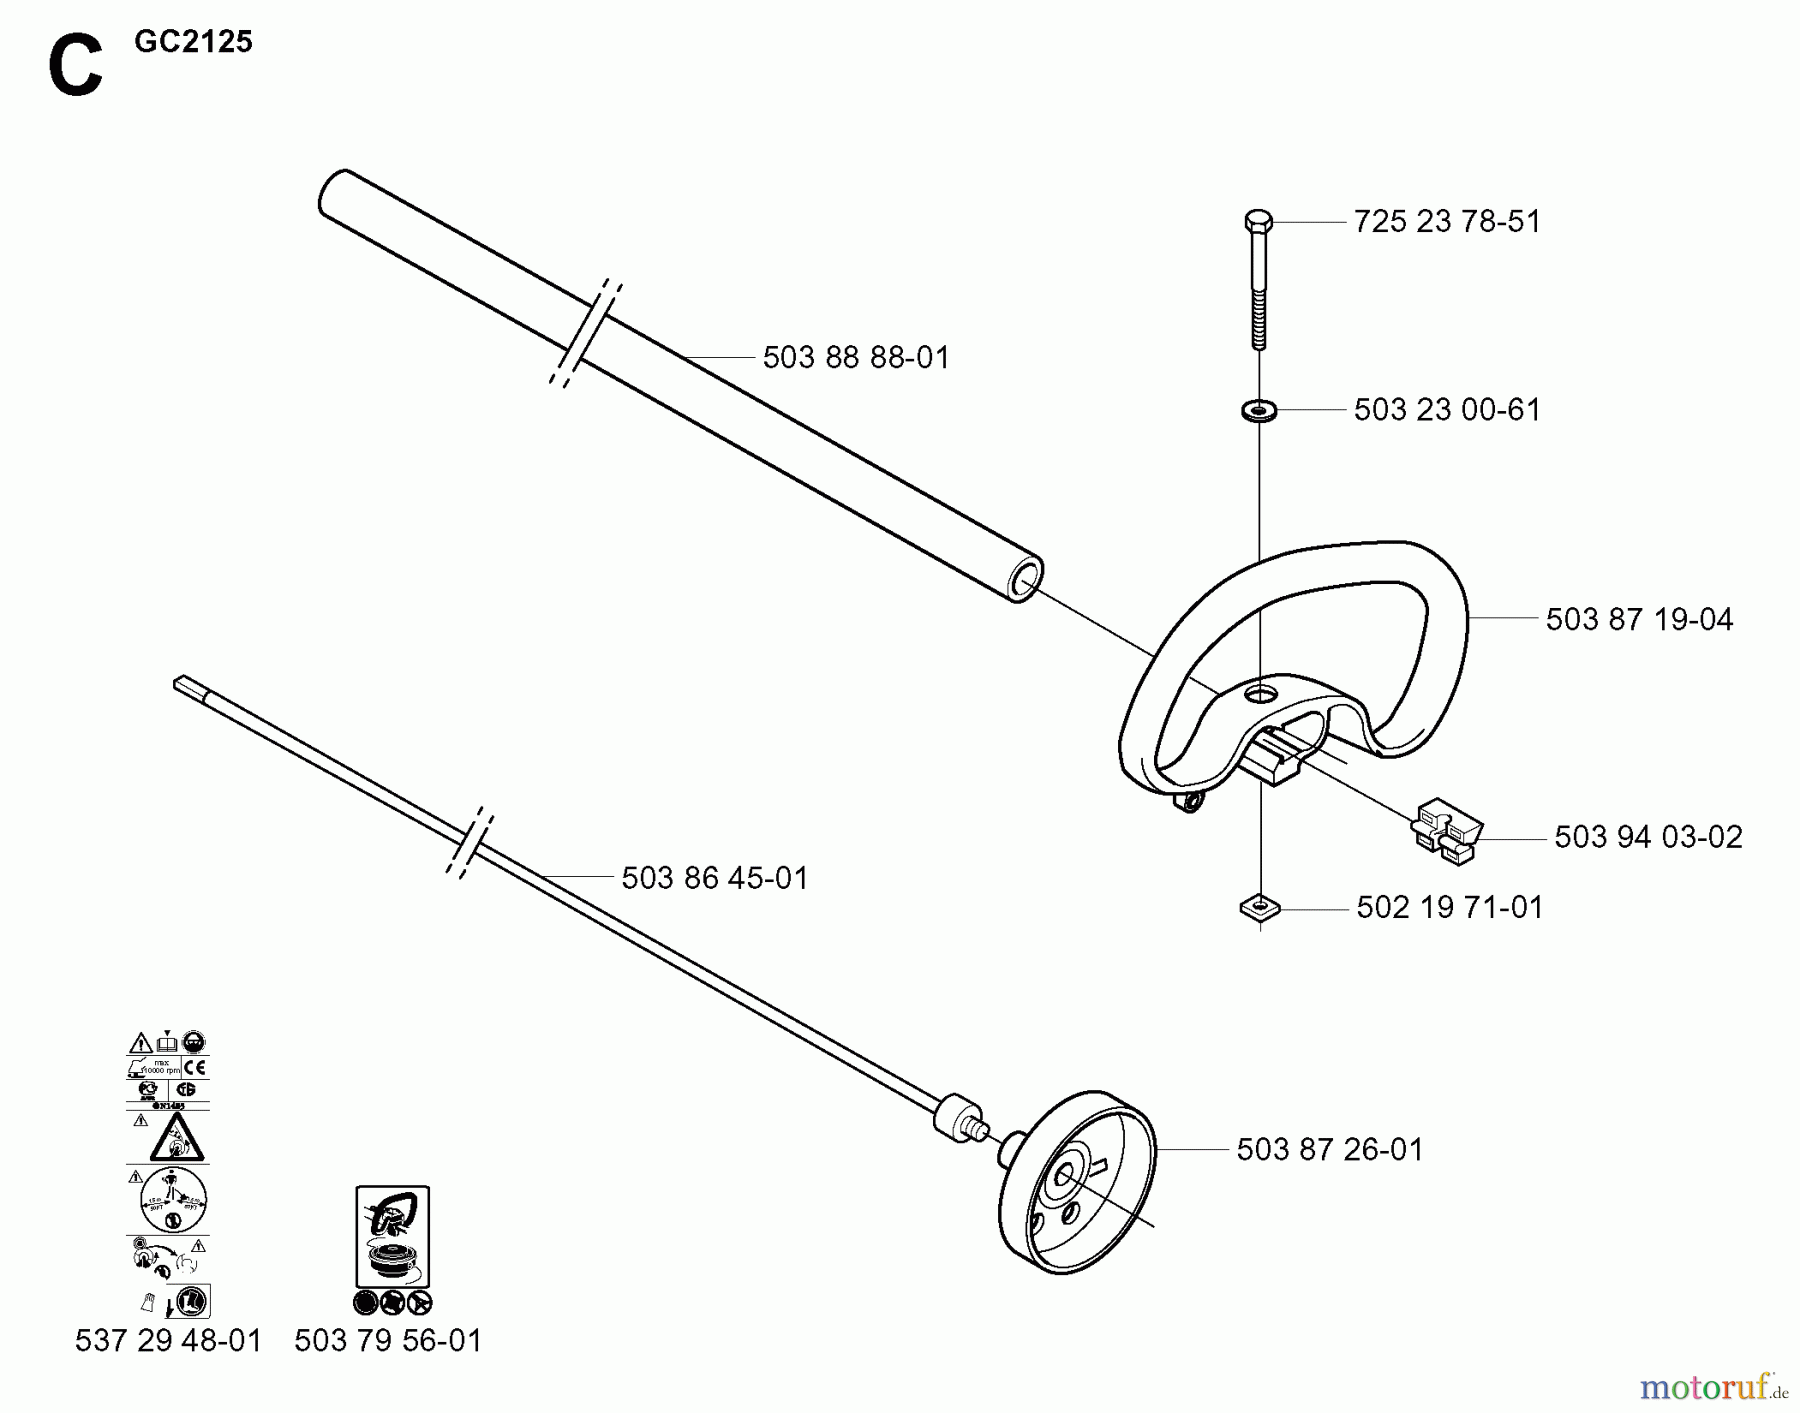  Jonsered Motorsensen, Trimmer GC2125 - Jonsered String/Brush Trimmer (2005-01) SHAFT HANDLE #2